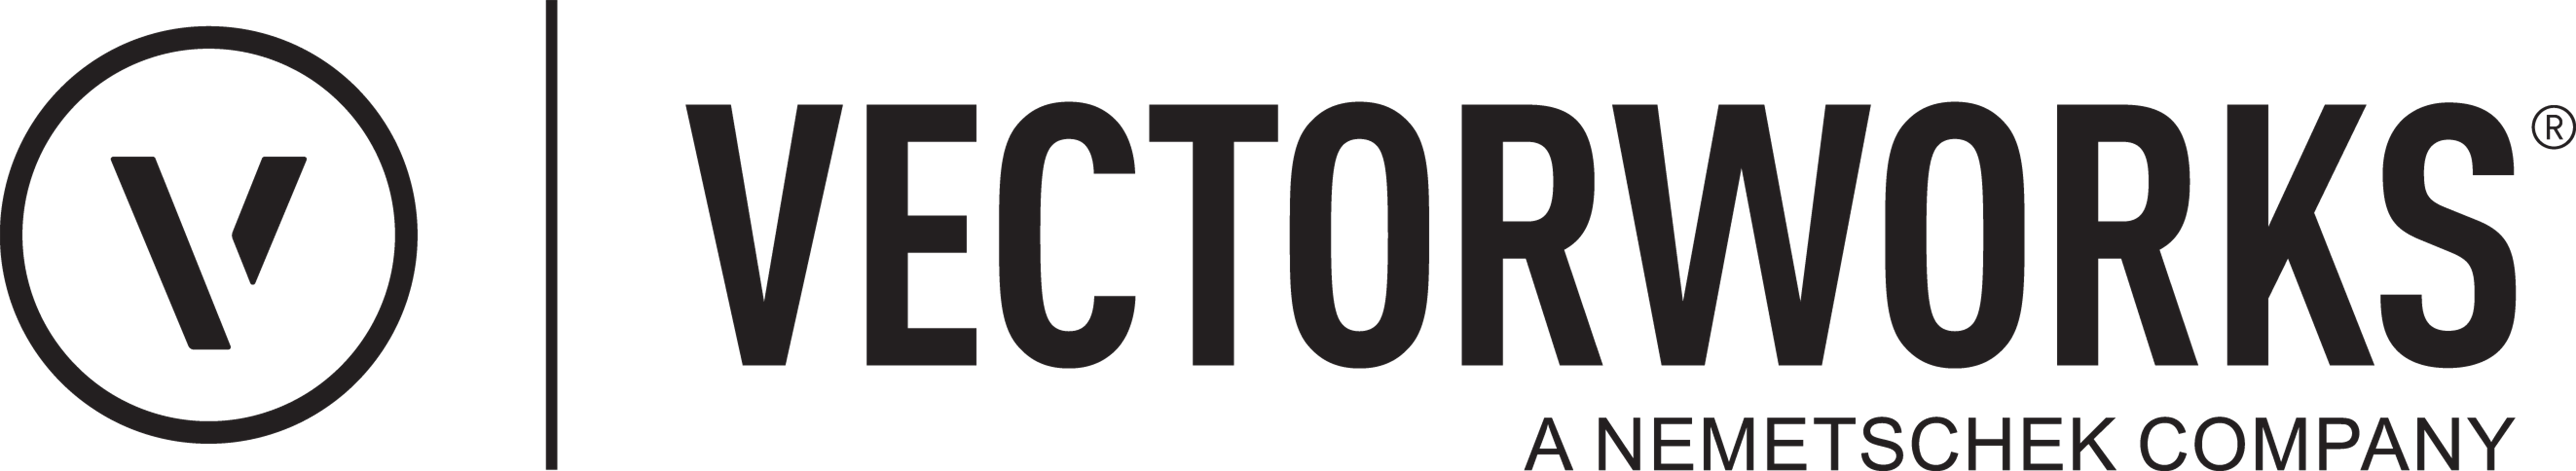 2015 Vectorworks logotype Nemetschek Modifier